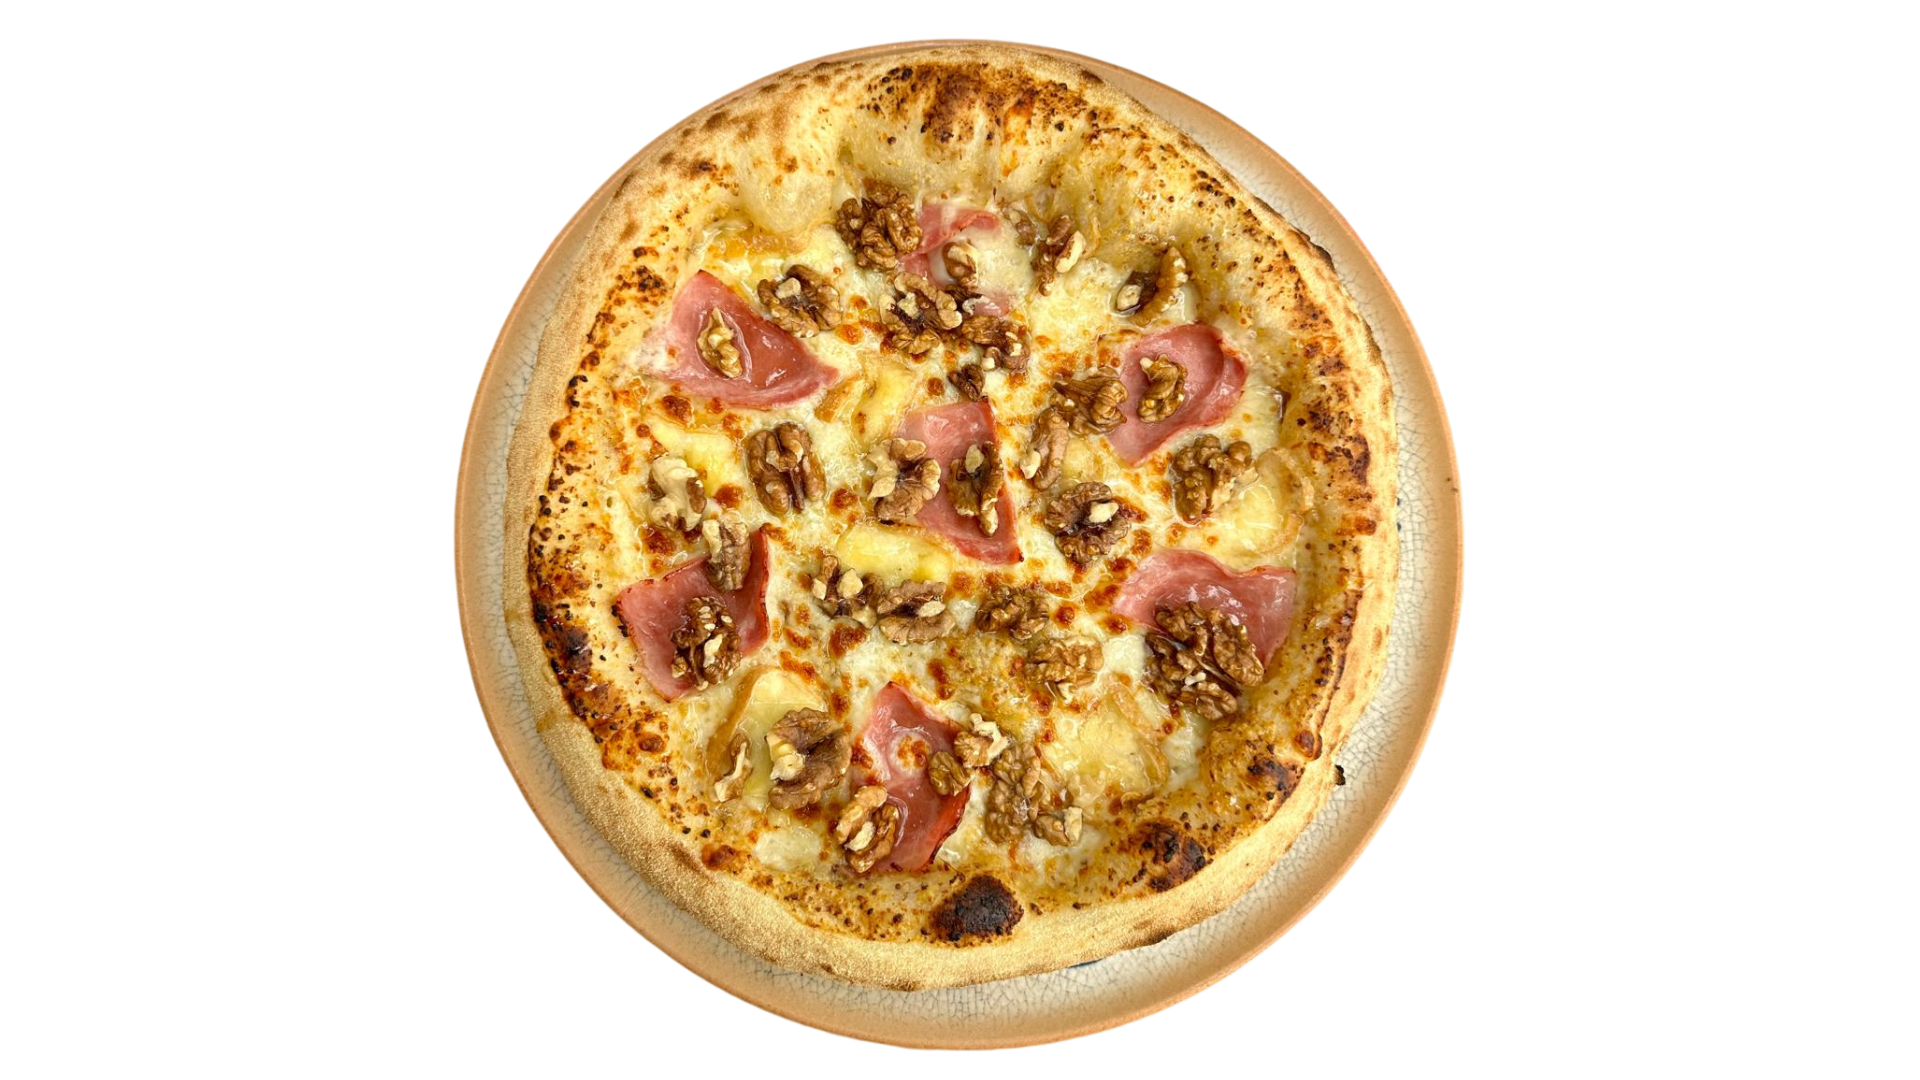 Lusitalia - Pizzeria